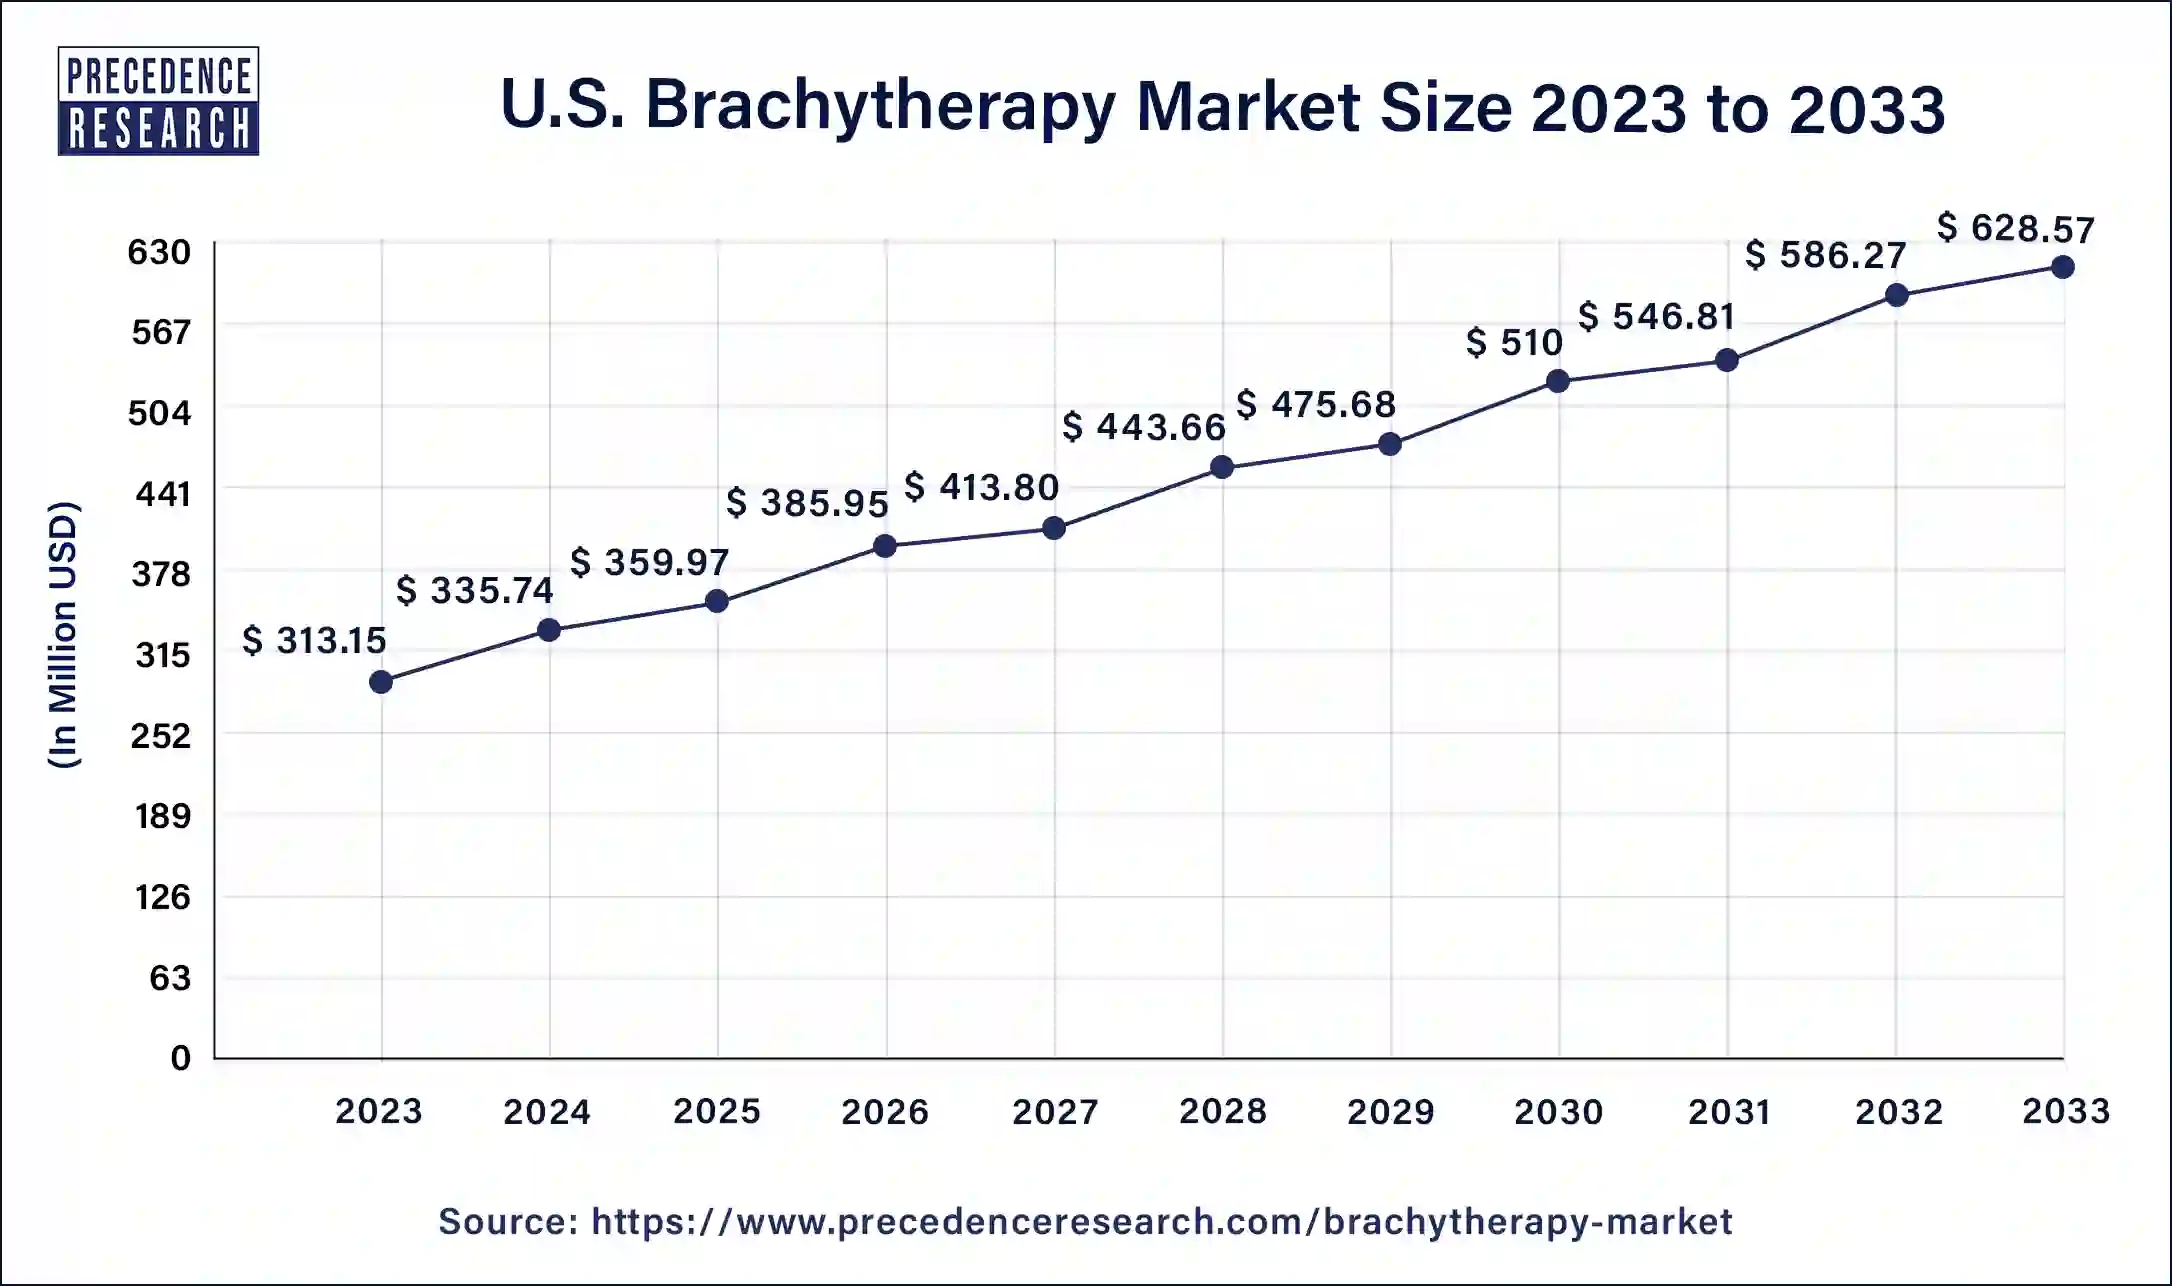 U.S. Brachytherapy Market Size 2024 to 2033